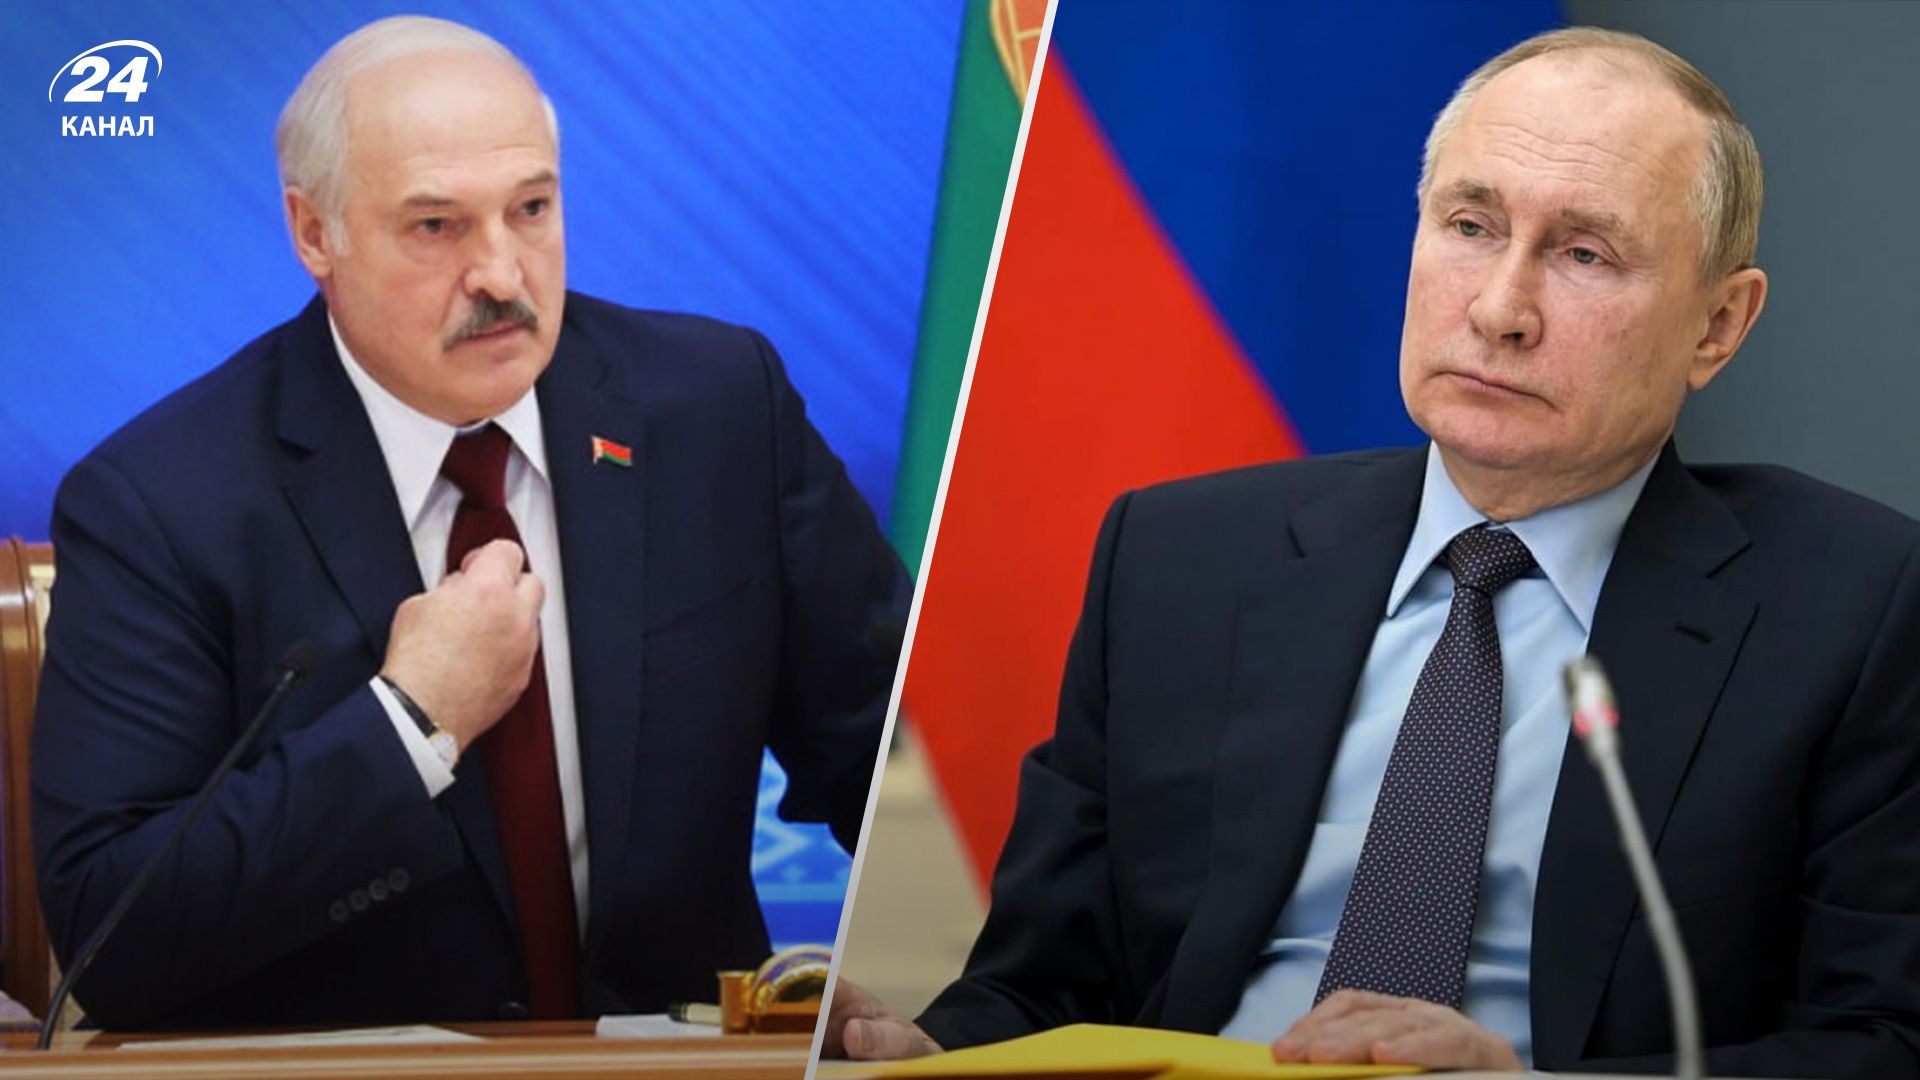 До Білорусі кличуть війну, - Давидюк про план Путіна, щодо Лукашенка - 24 Канал